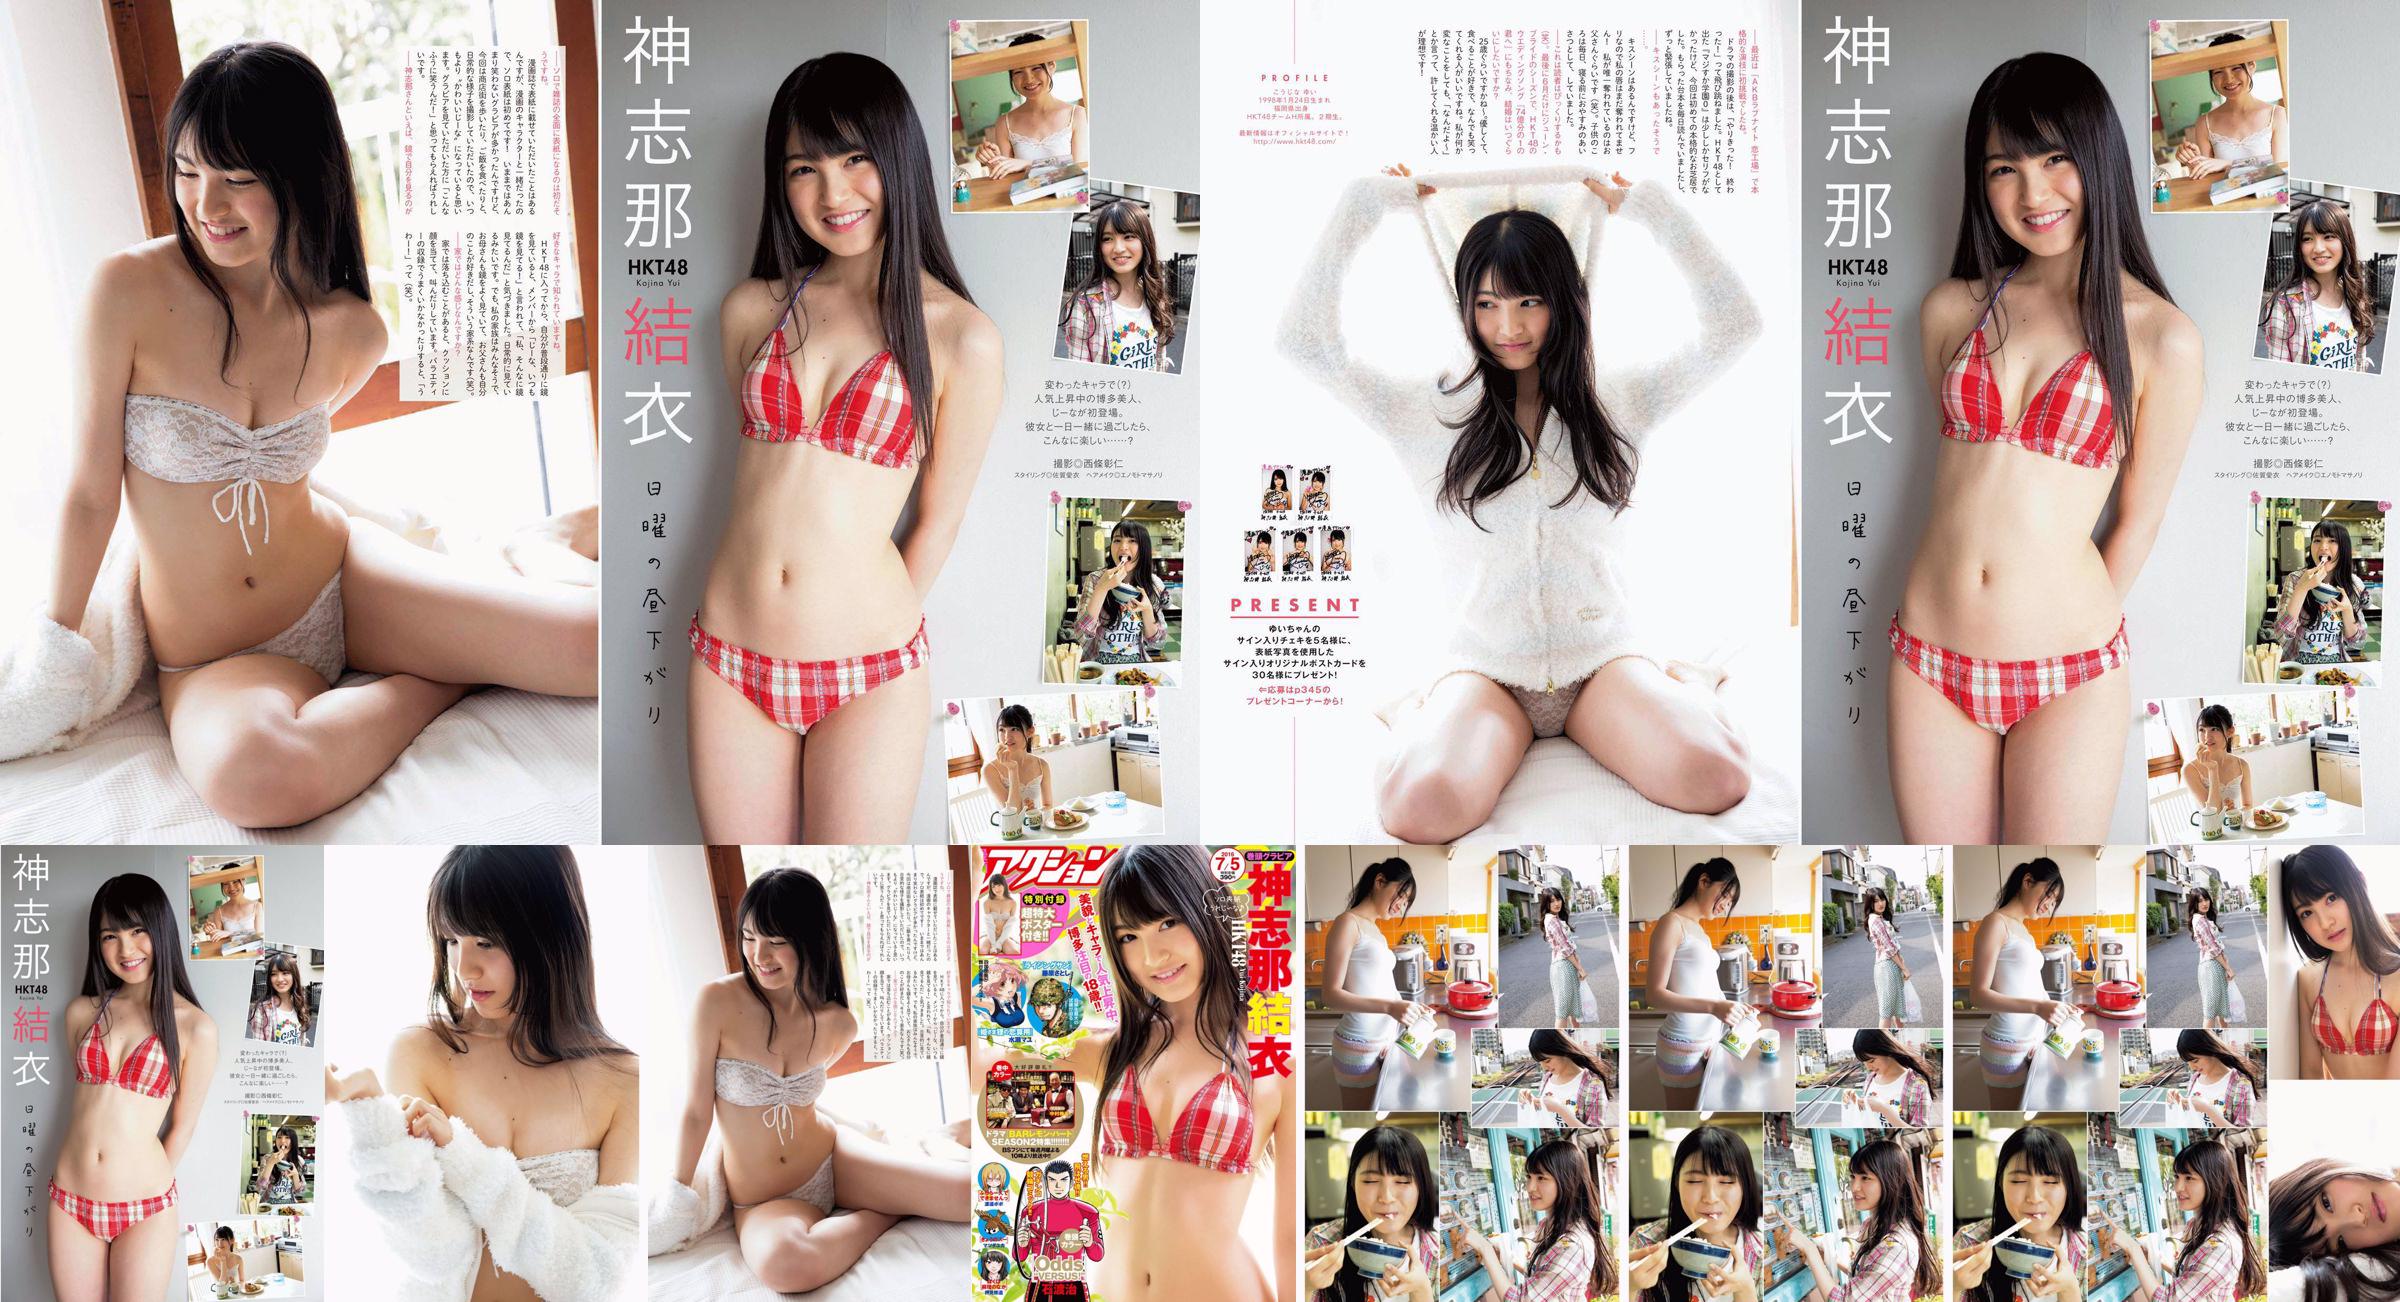 [Manga Action] Shinshina Yui 2016 No.13 Photo Magazine No.121f47 Página 3